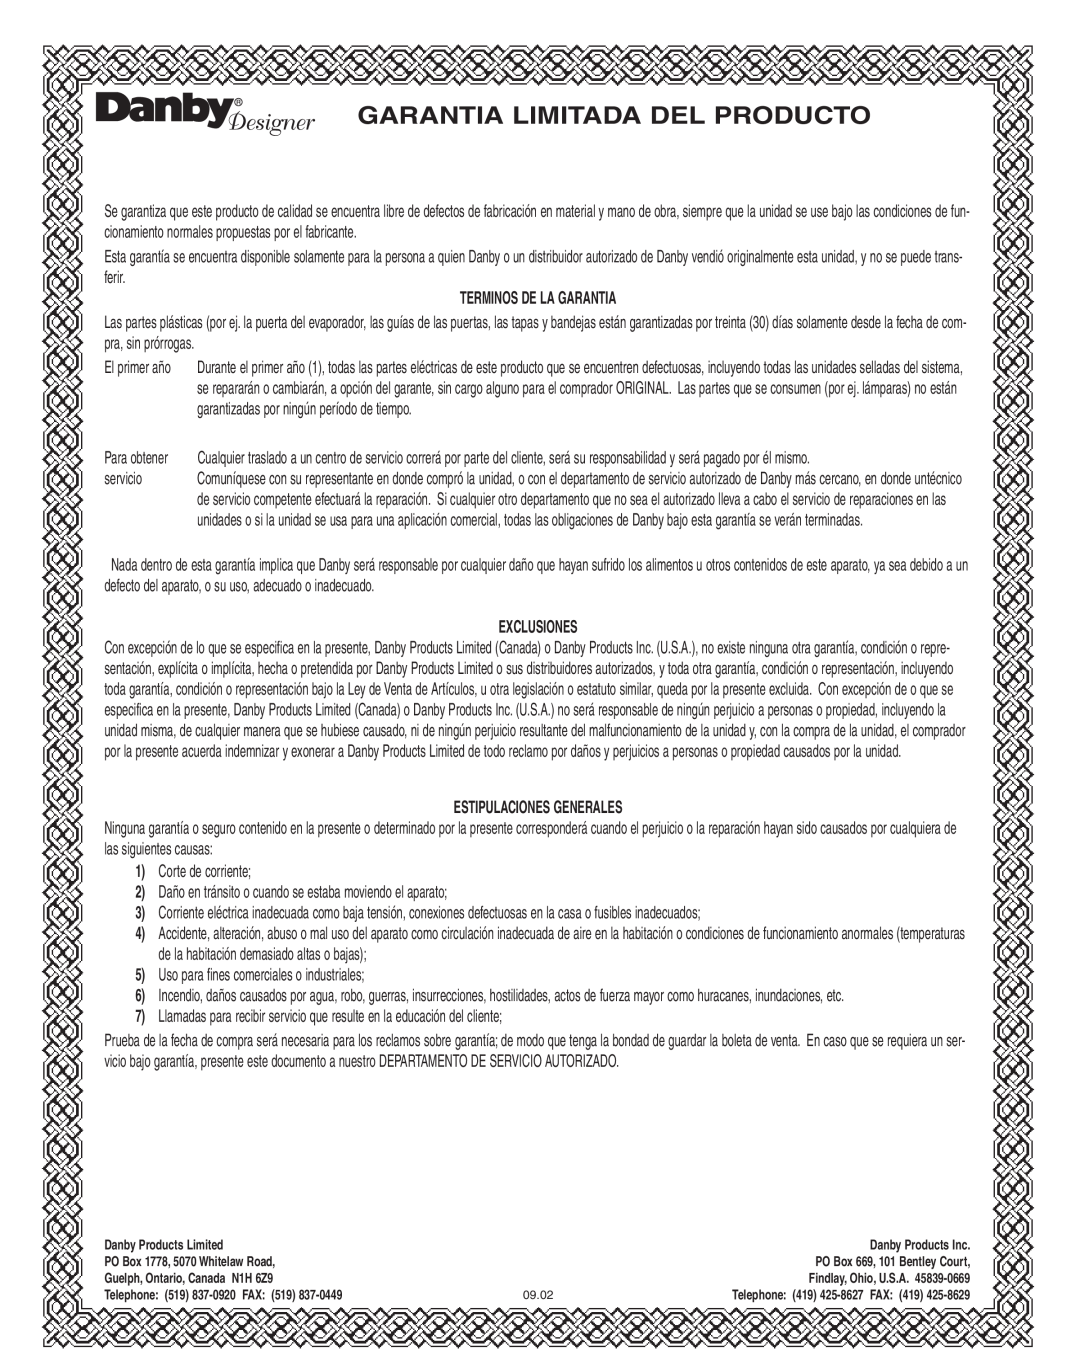 Danby dim1524w manual Garantia Limitada Del Producto, Terminos De La Garantia, Exclusiones, Estipulaciones Generales 